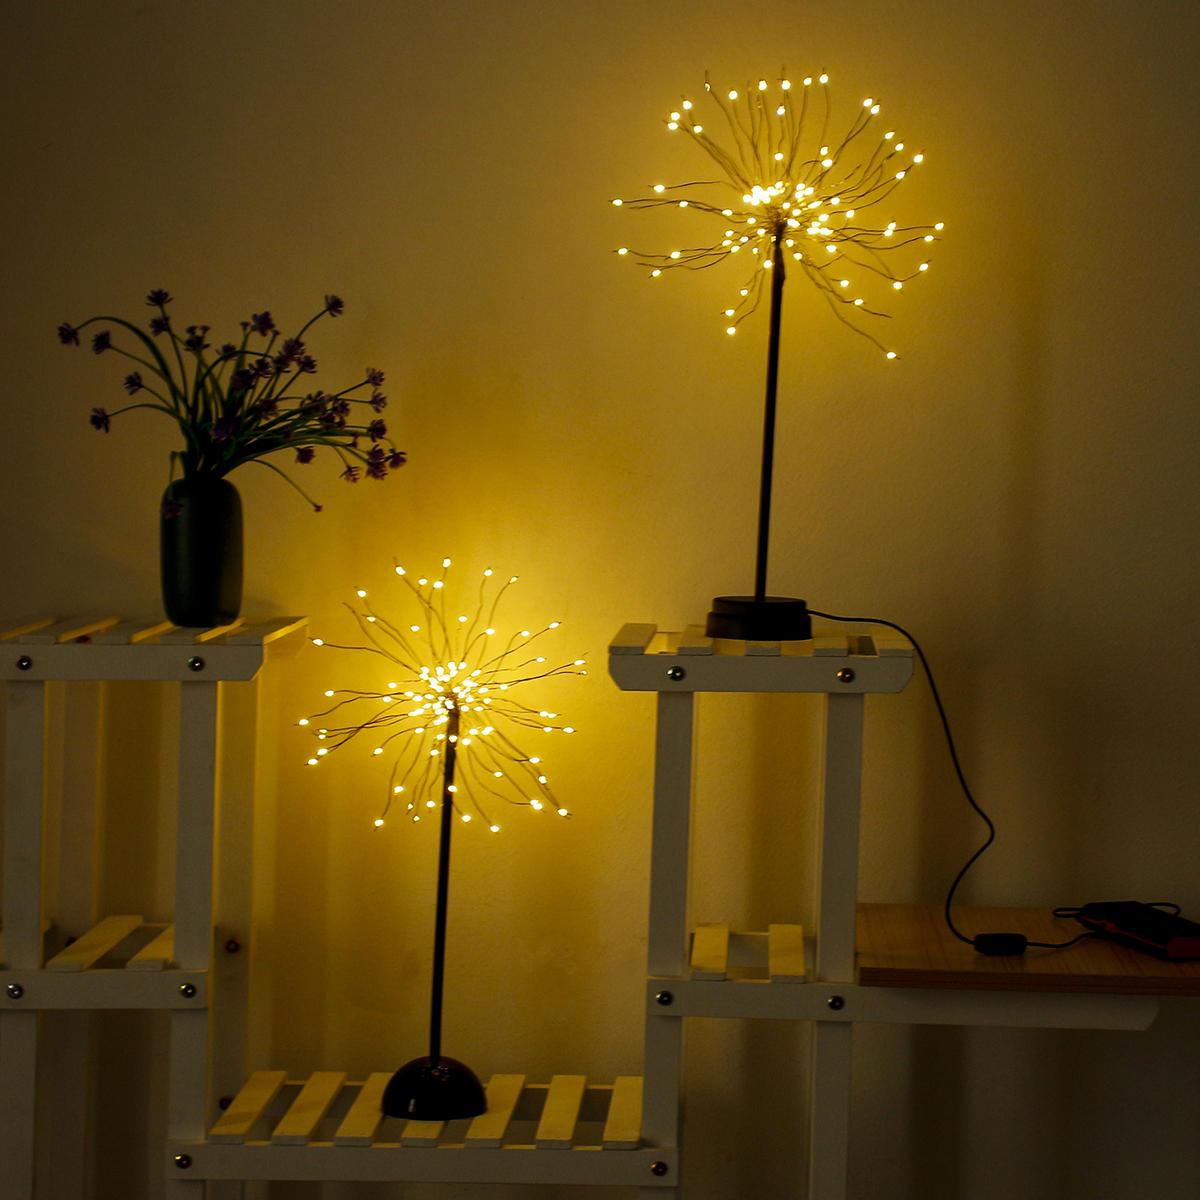 100 LED مصباح الهندباء USB الألعاب النارية ليلة ضوء حديقة حفل زفاف عيد الميلاد